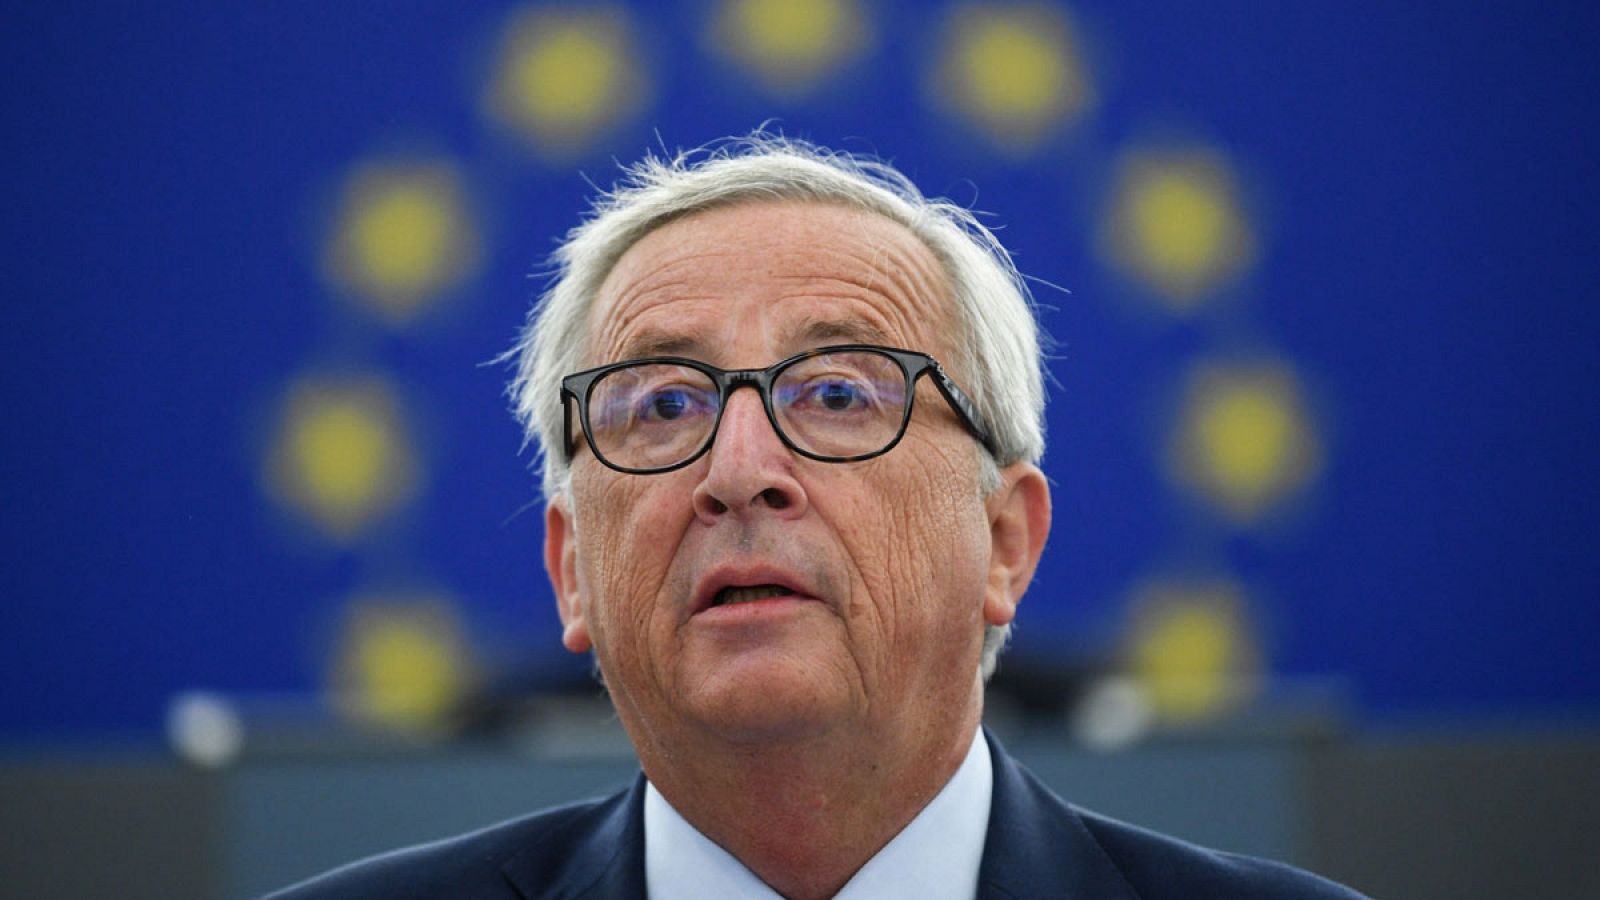 El presidente de la Comisión Europea, Jean-Claude Juncker, pronuncia el discurso del Estado de la Unión